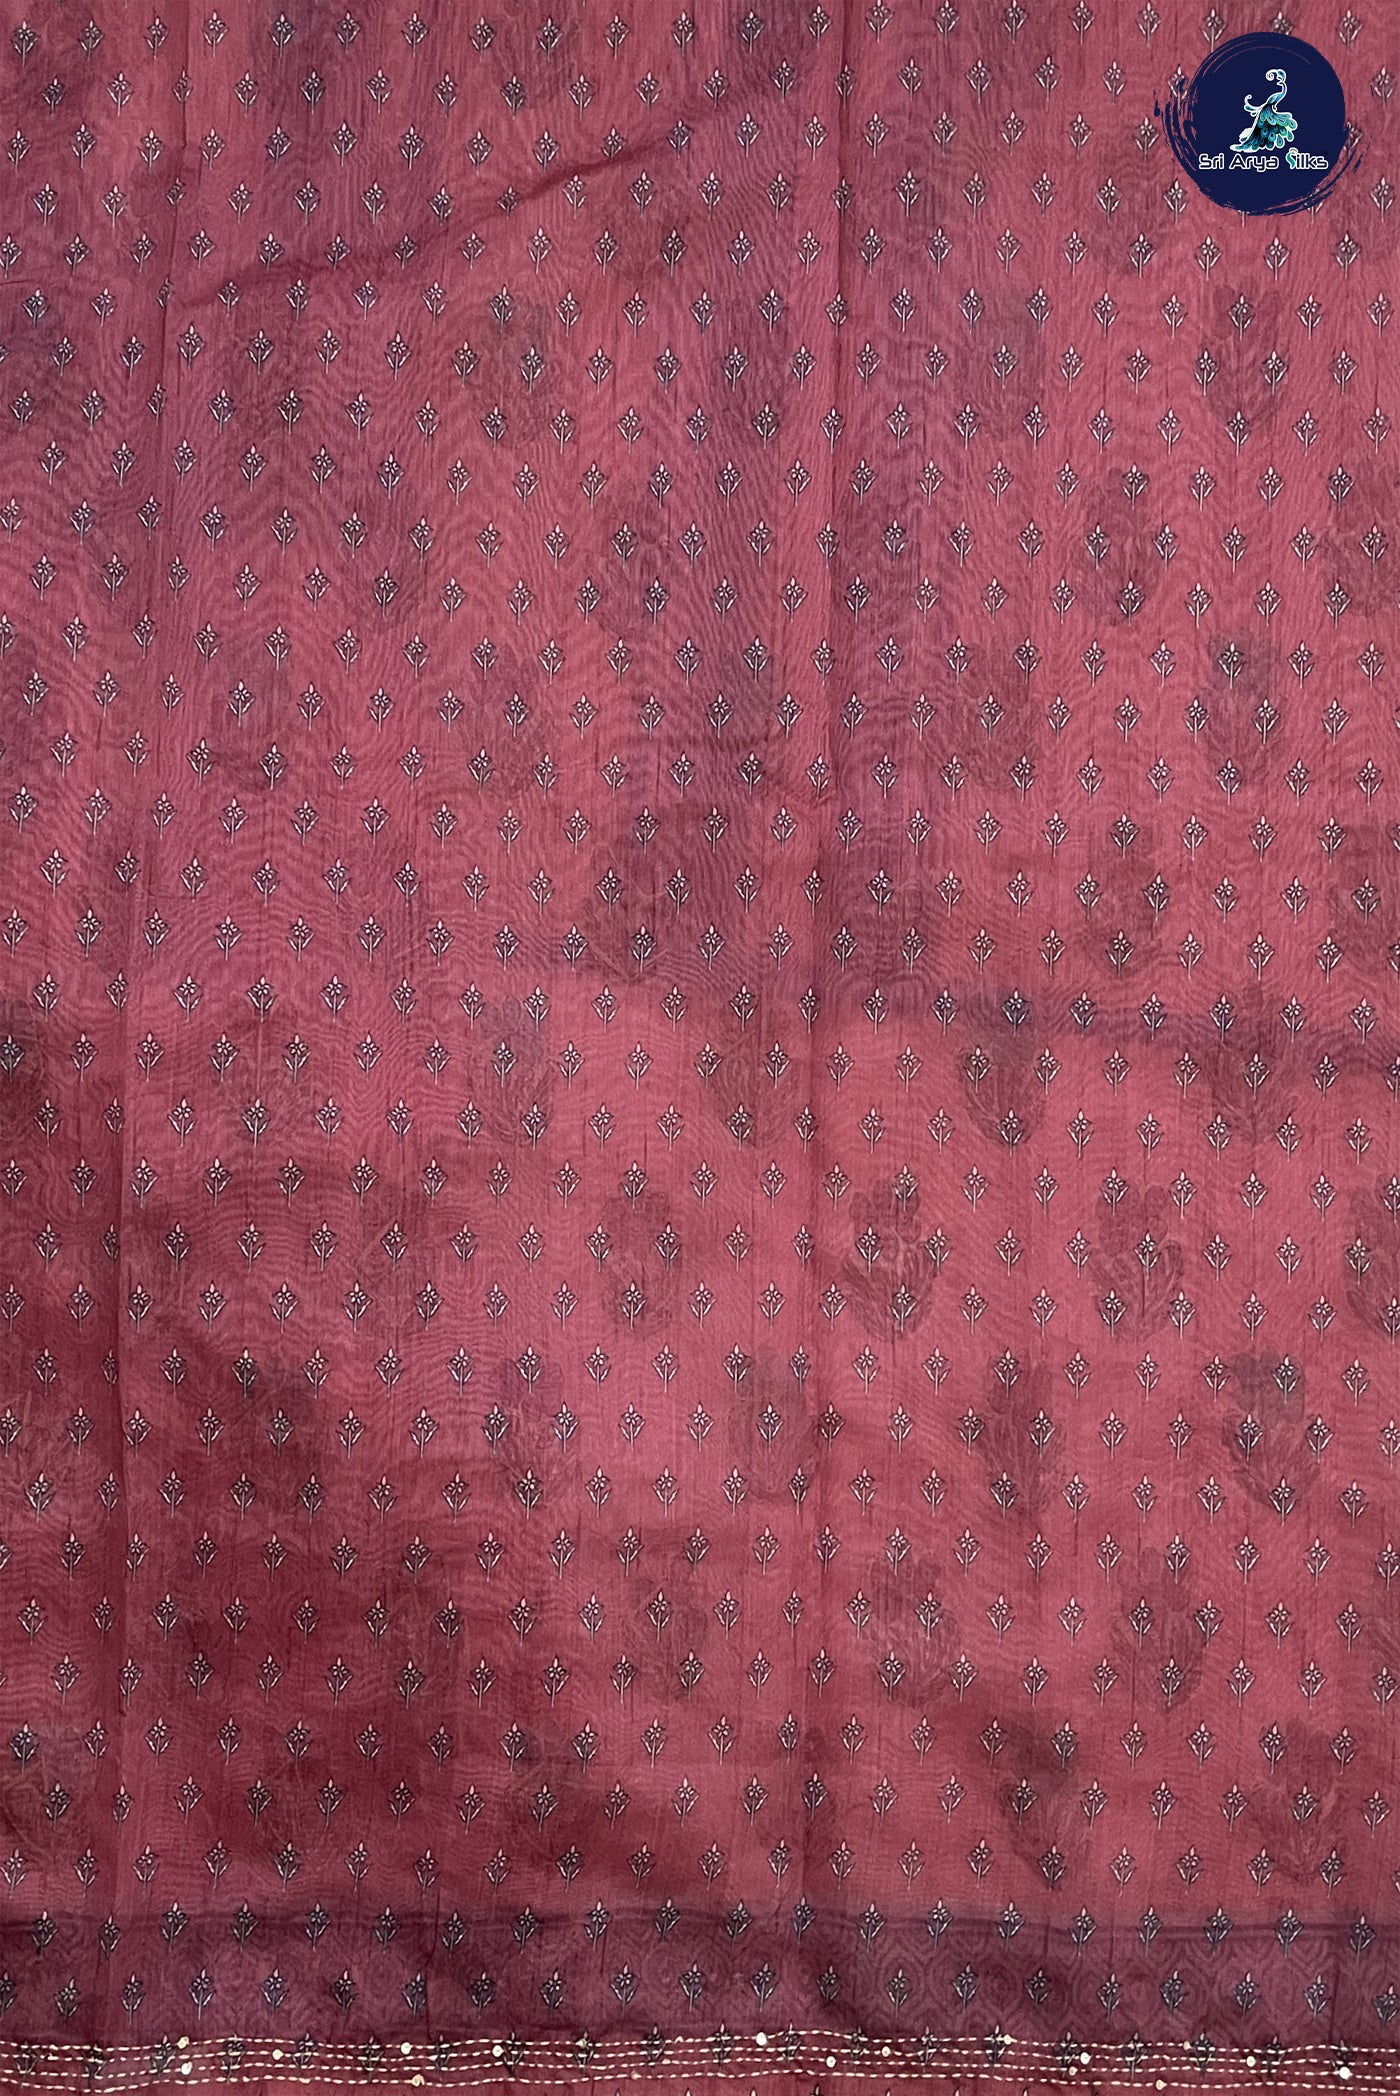 Blush Pink Tussar Saree With Kantha Work Pattern